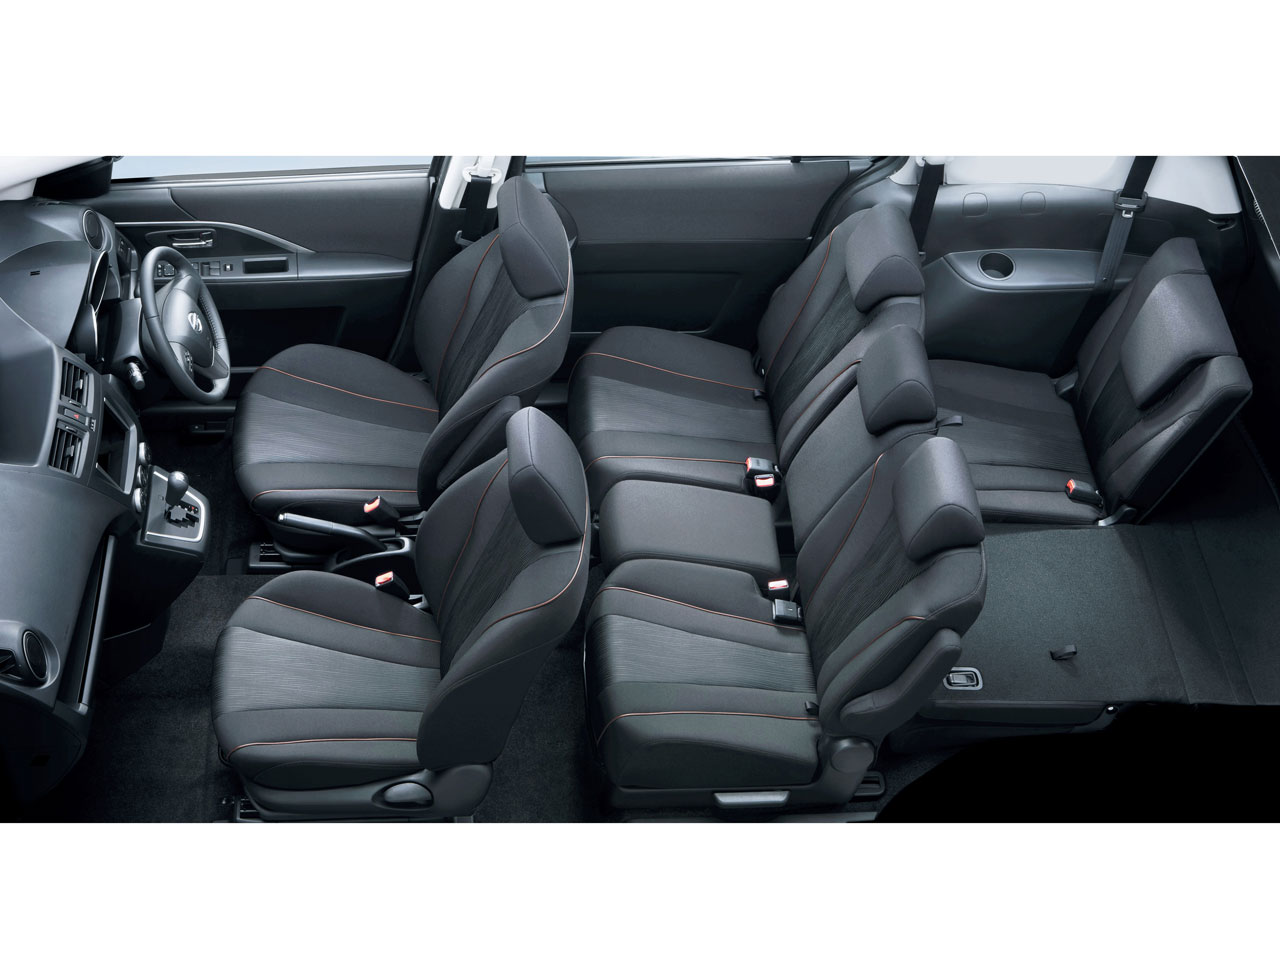 日産 ラフェスタ 11年モデル ハイウェイスターg スプレモの価格 性能 装備 オプション 12年4月26日発売 価格 Com